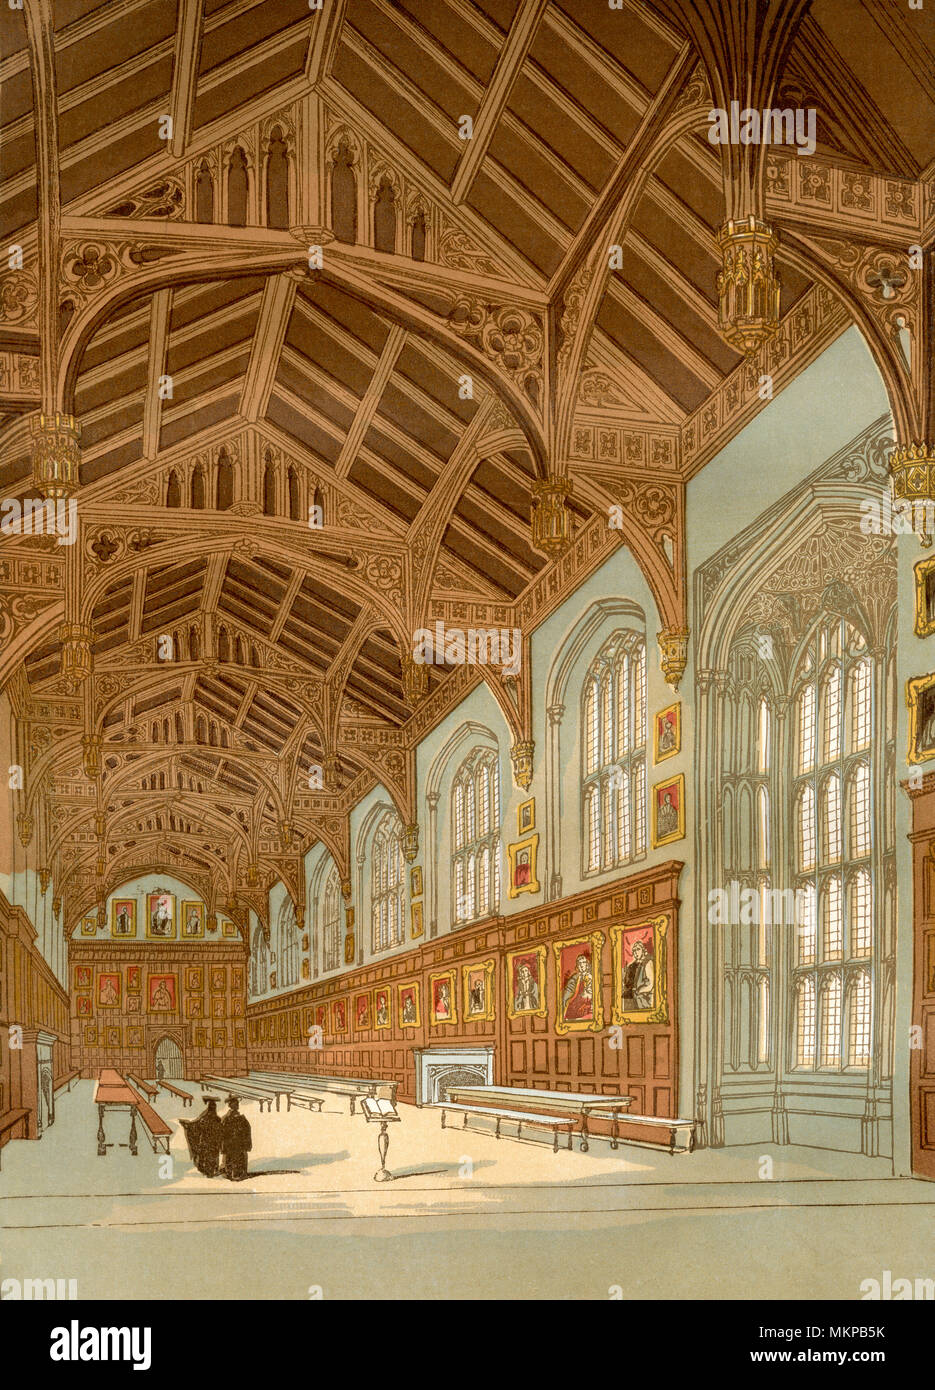 La Chiesa di Cristo Hall dell'Università di Oxford, Oxford, Inghilterra. Re Carlo mi ha tenuto il suo parlamento nella grande hall durante la Guerra Civile Inglese. Da Vecchia Inghilterra: un museo pittorico, pubblicato nel 1847. Foto Stock